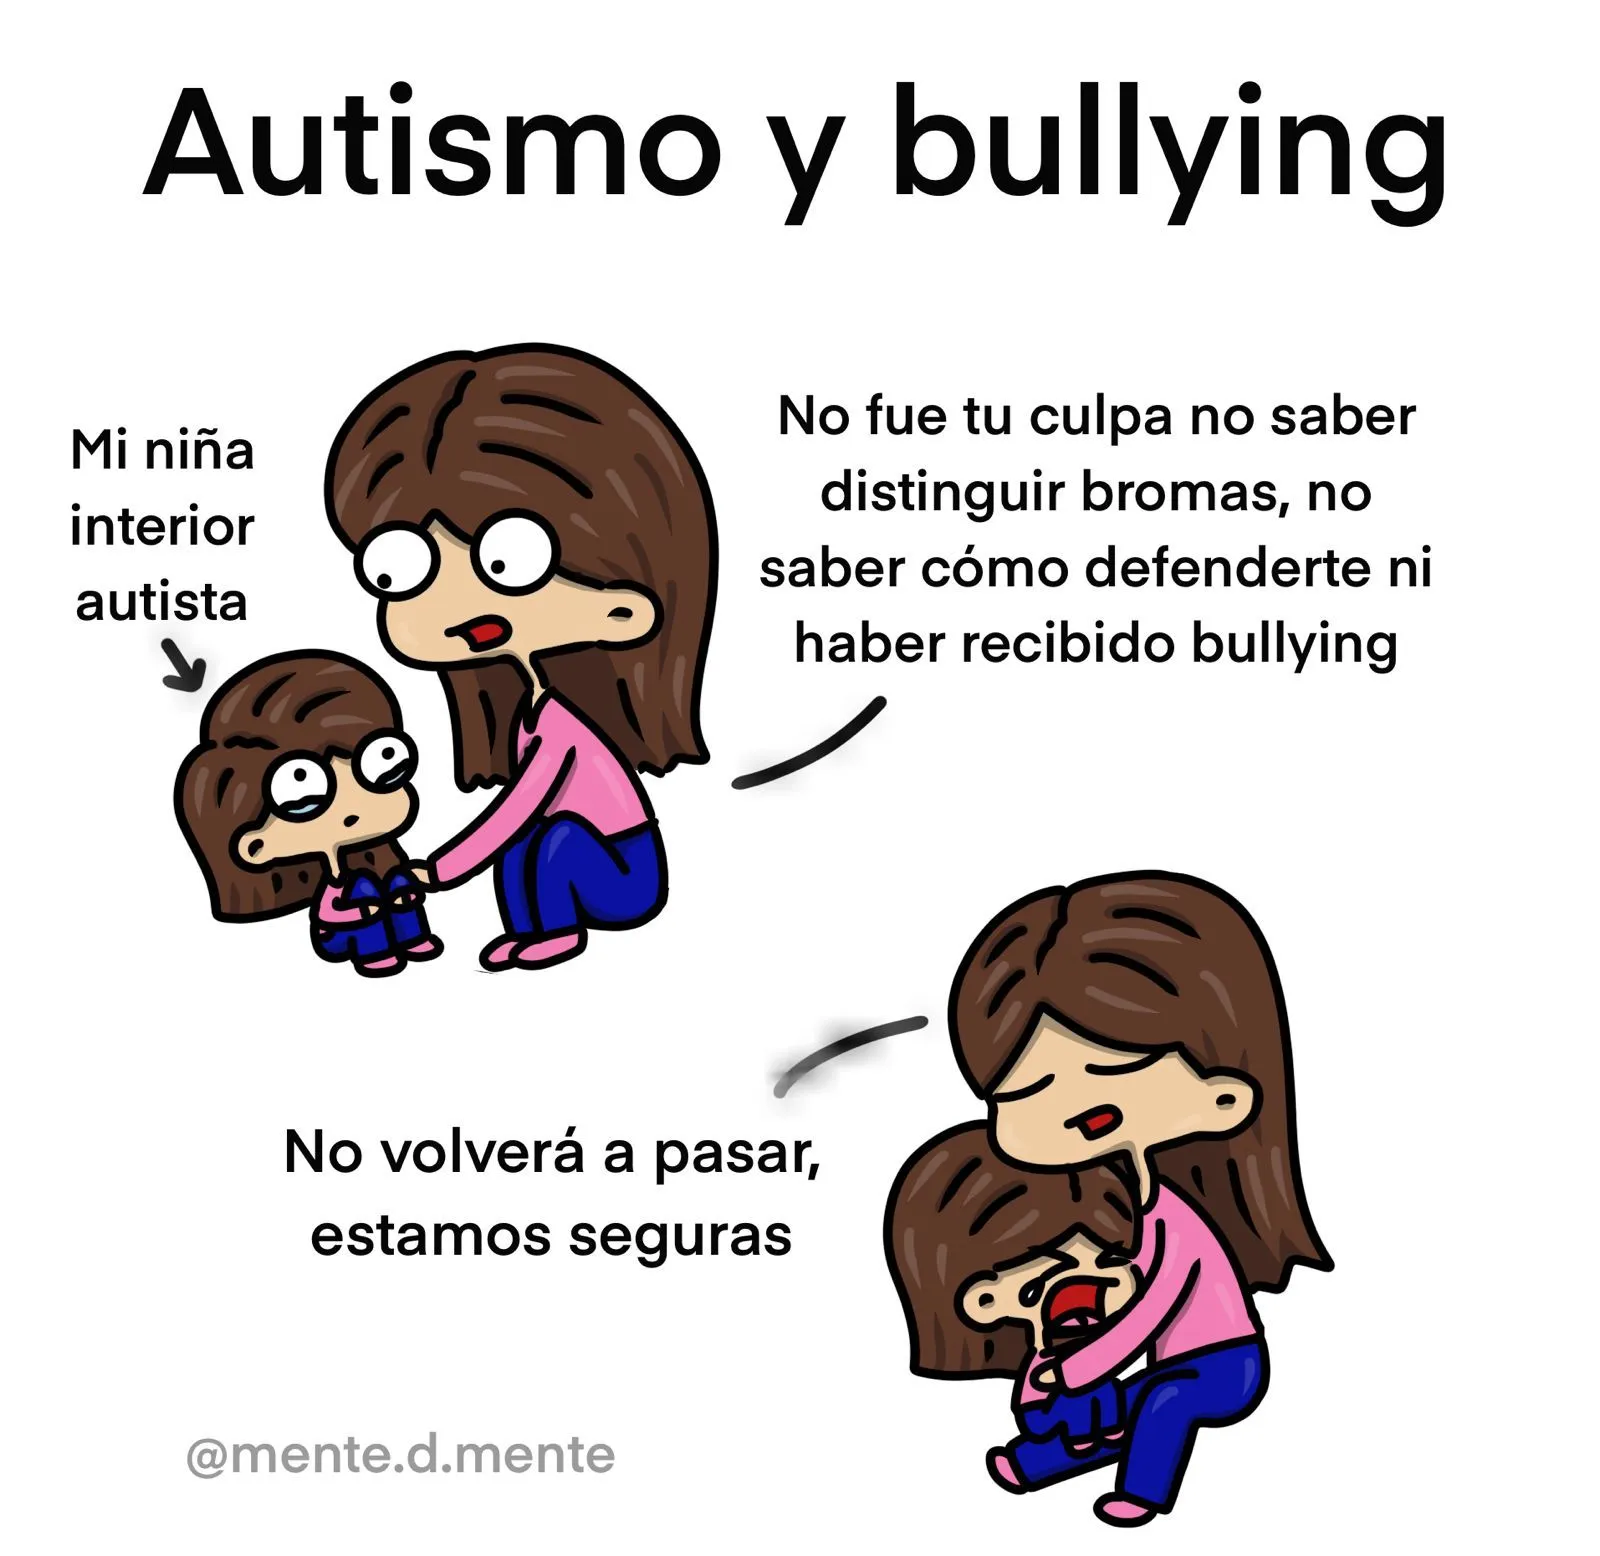 Autismo y bullying: datos y mi historia - menteDmente